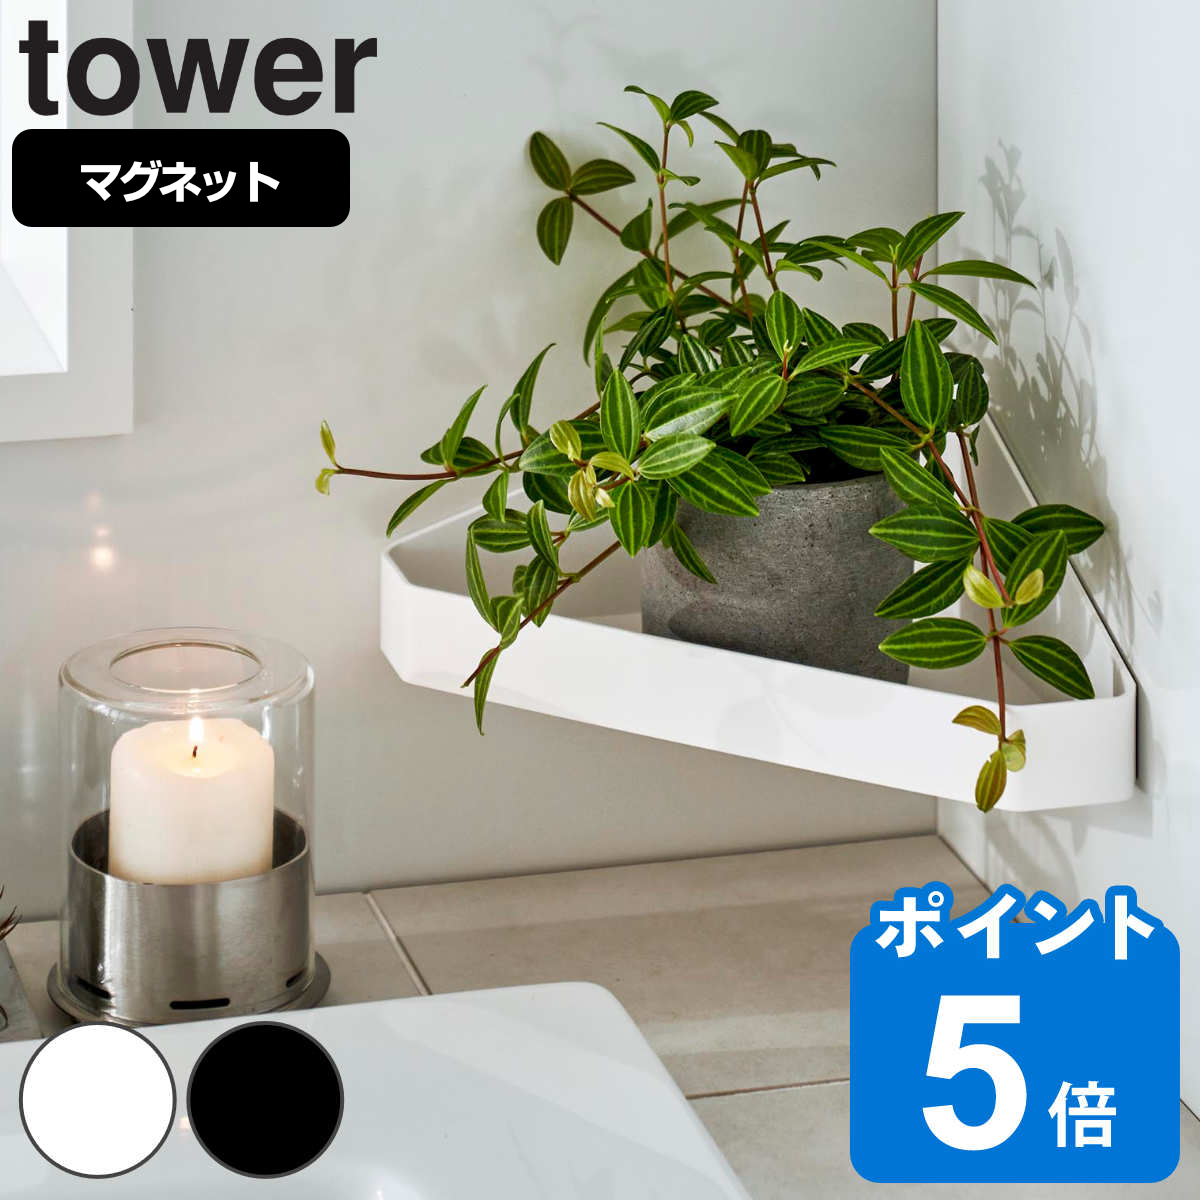 山崎実業 tower リバーシブルマグネットバスルームコーナーラック タワー